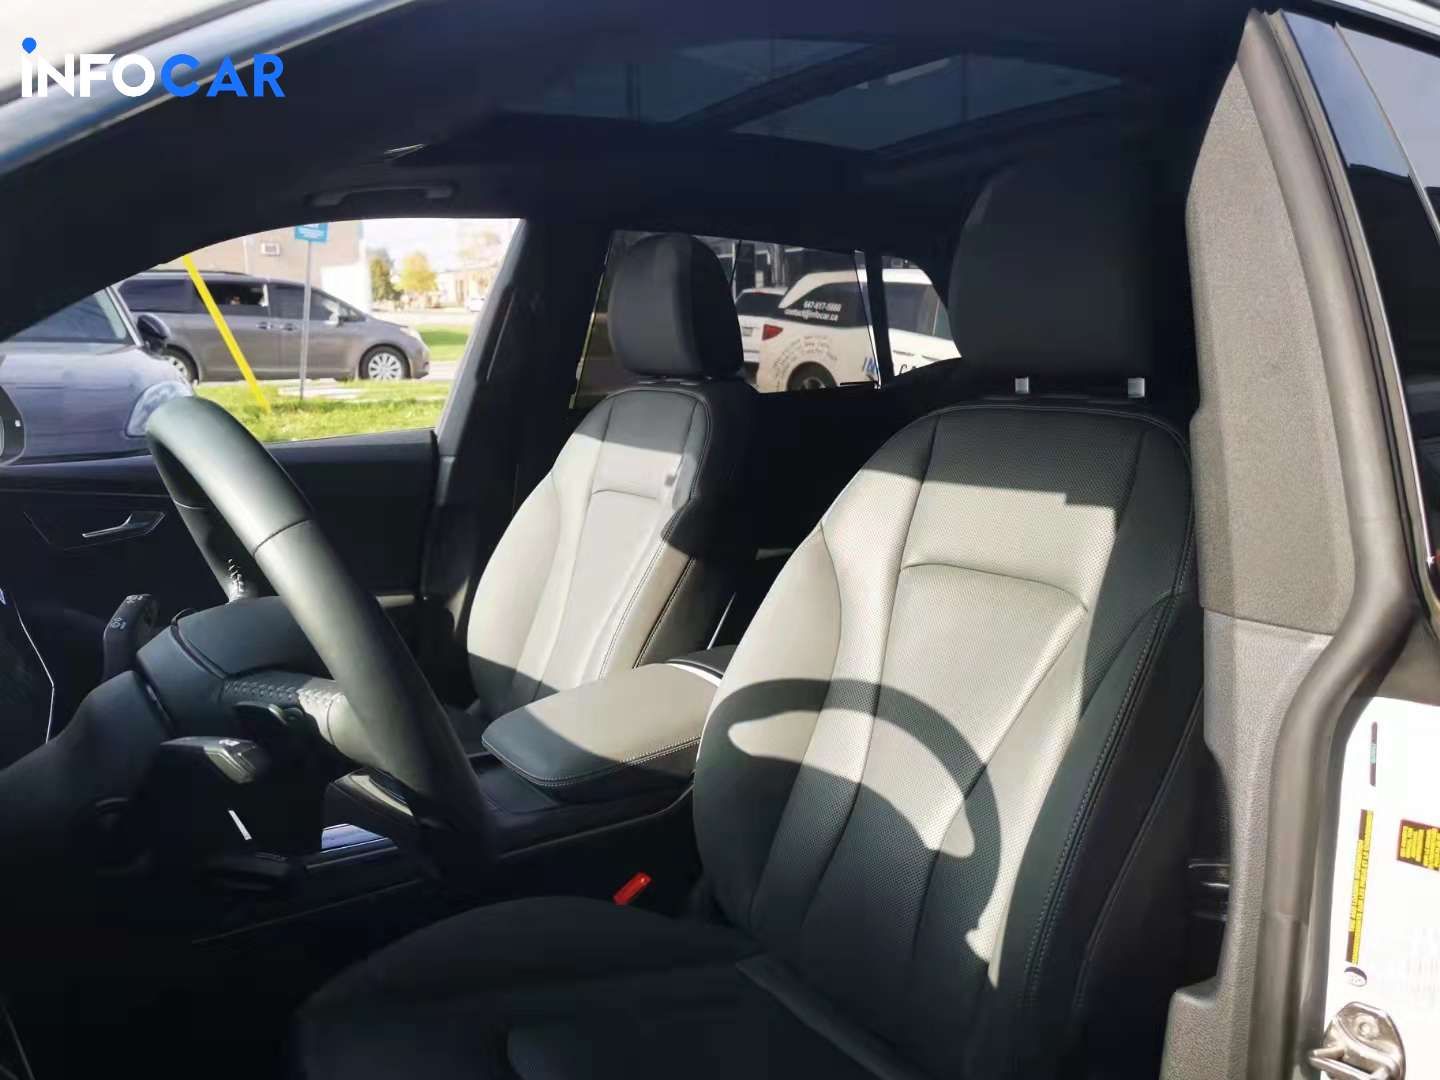 2019 Audi Q8 technik - INFOCAR - Toronto Auto Trading Platform